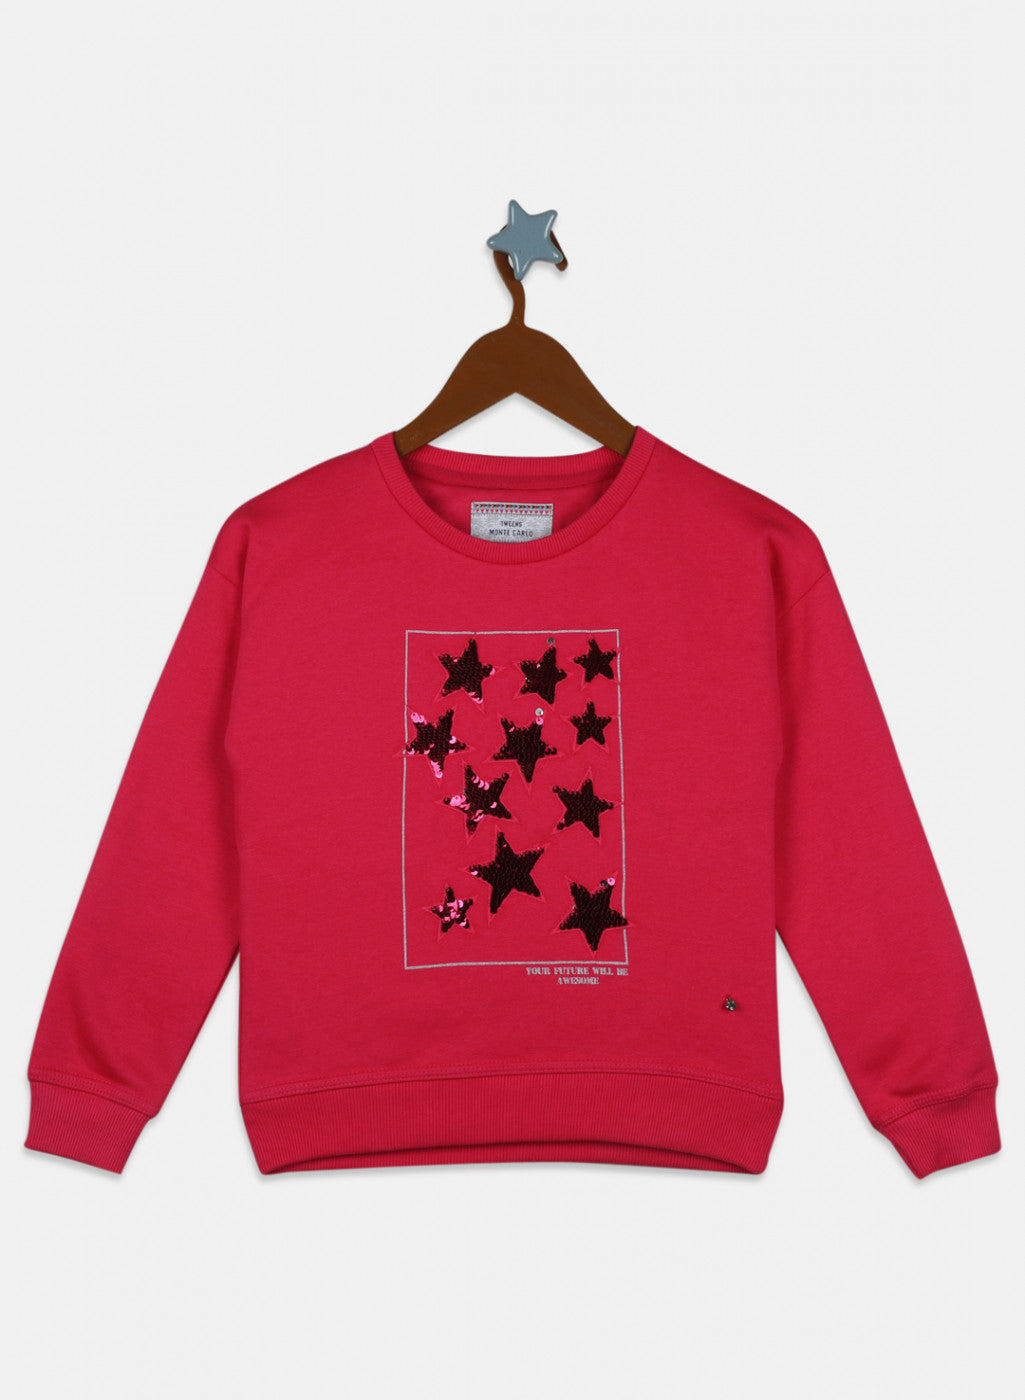 Girls Pink Embroidered Sweatshirt